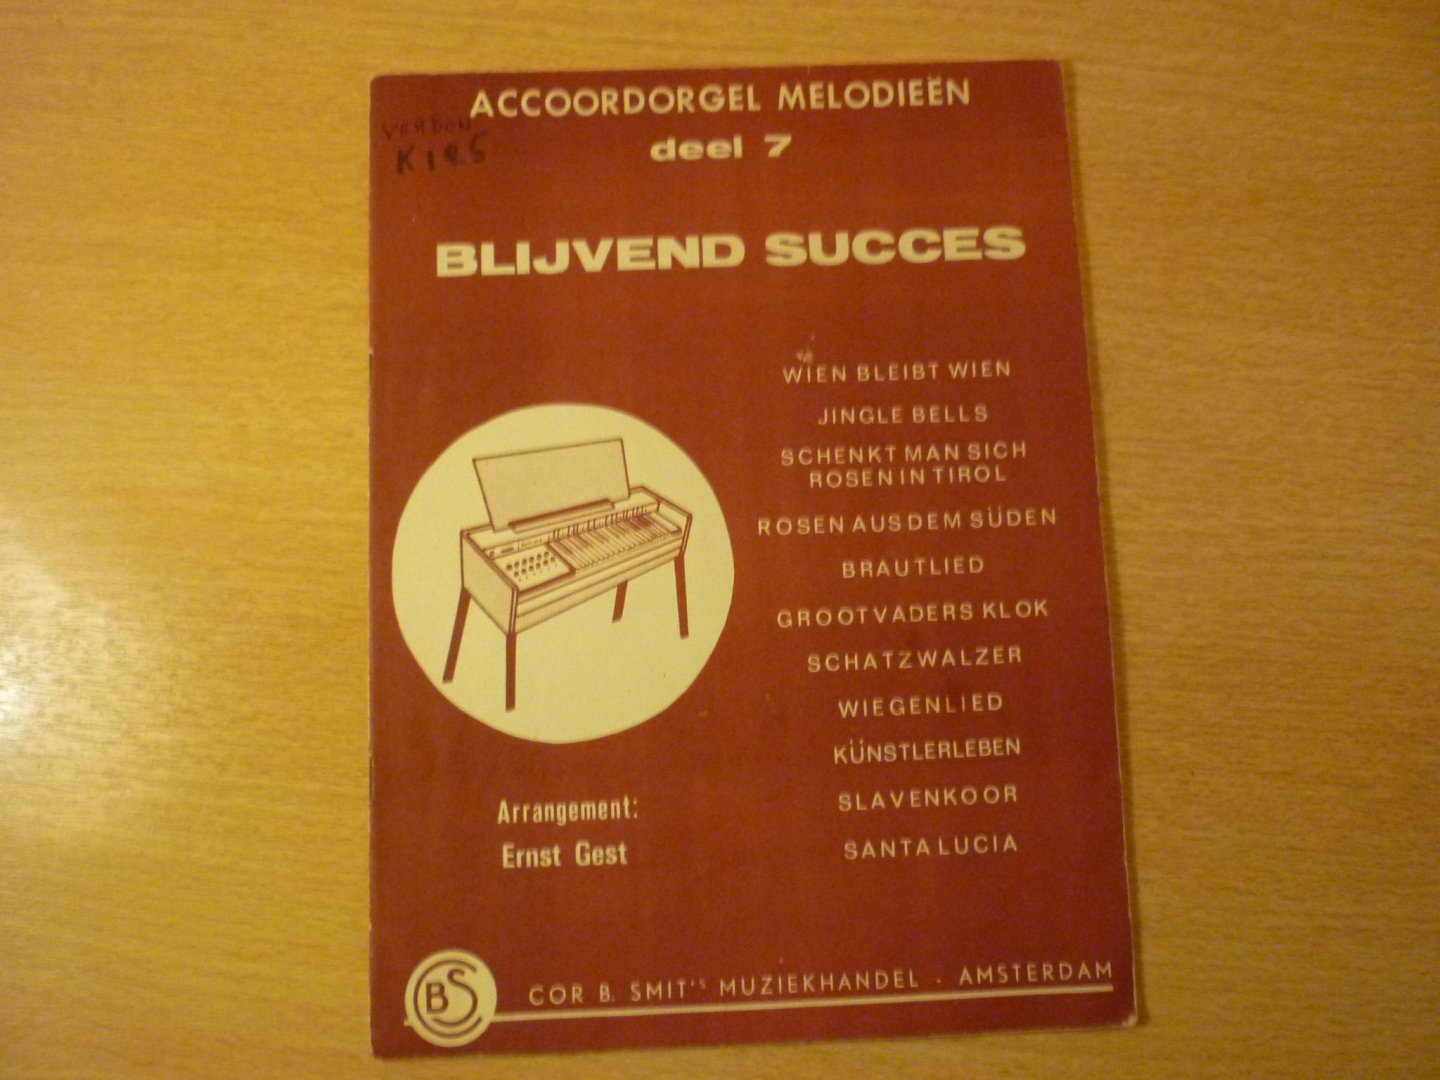 Gest; Ernst - Blijvend succes; Accoordorgel Melodieen - deel 7